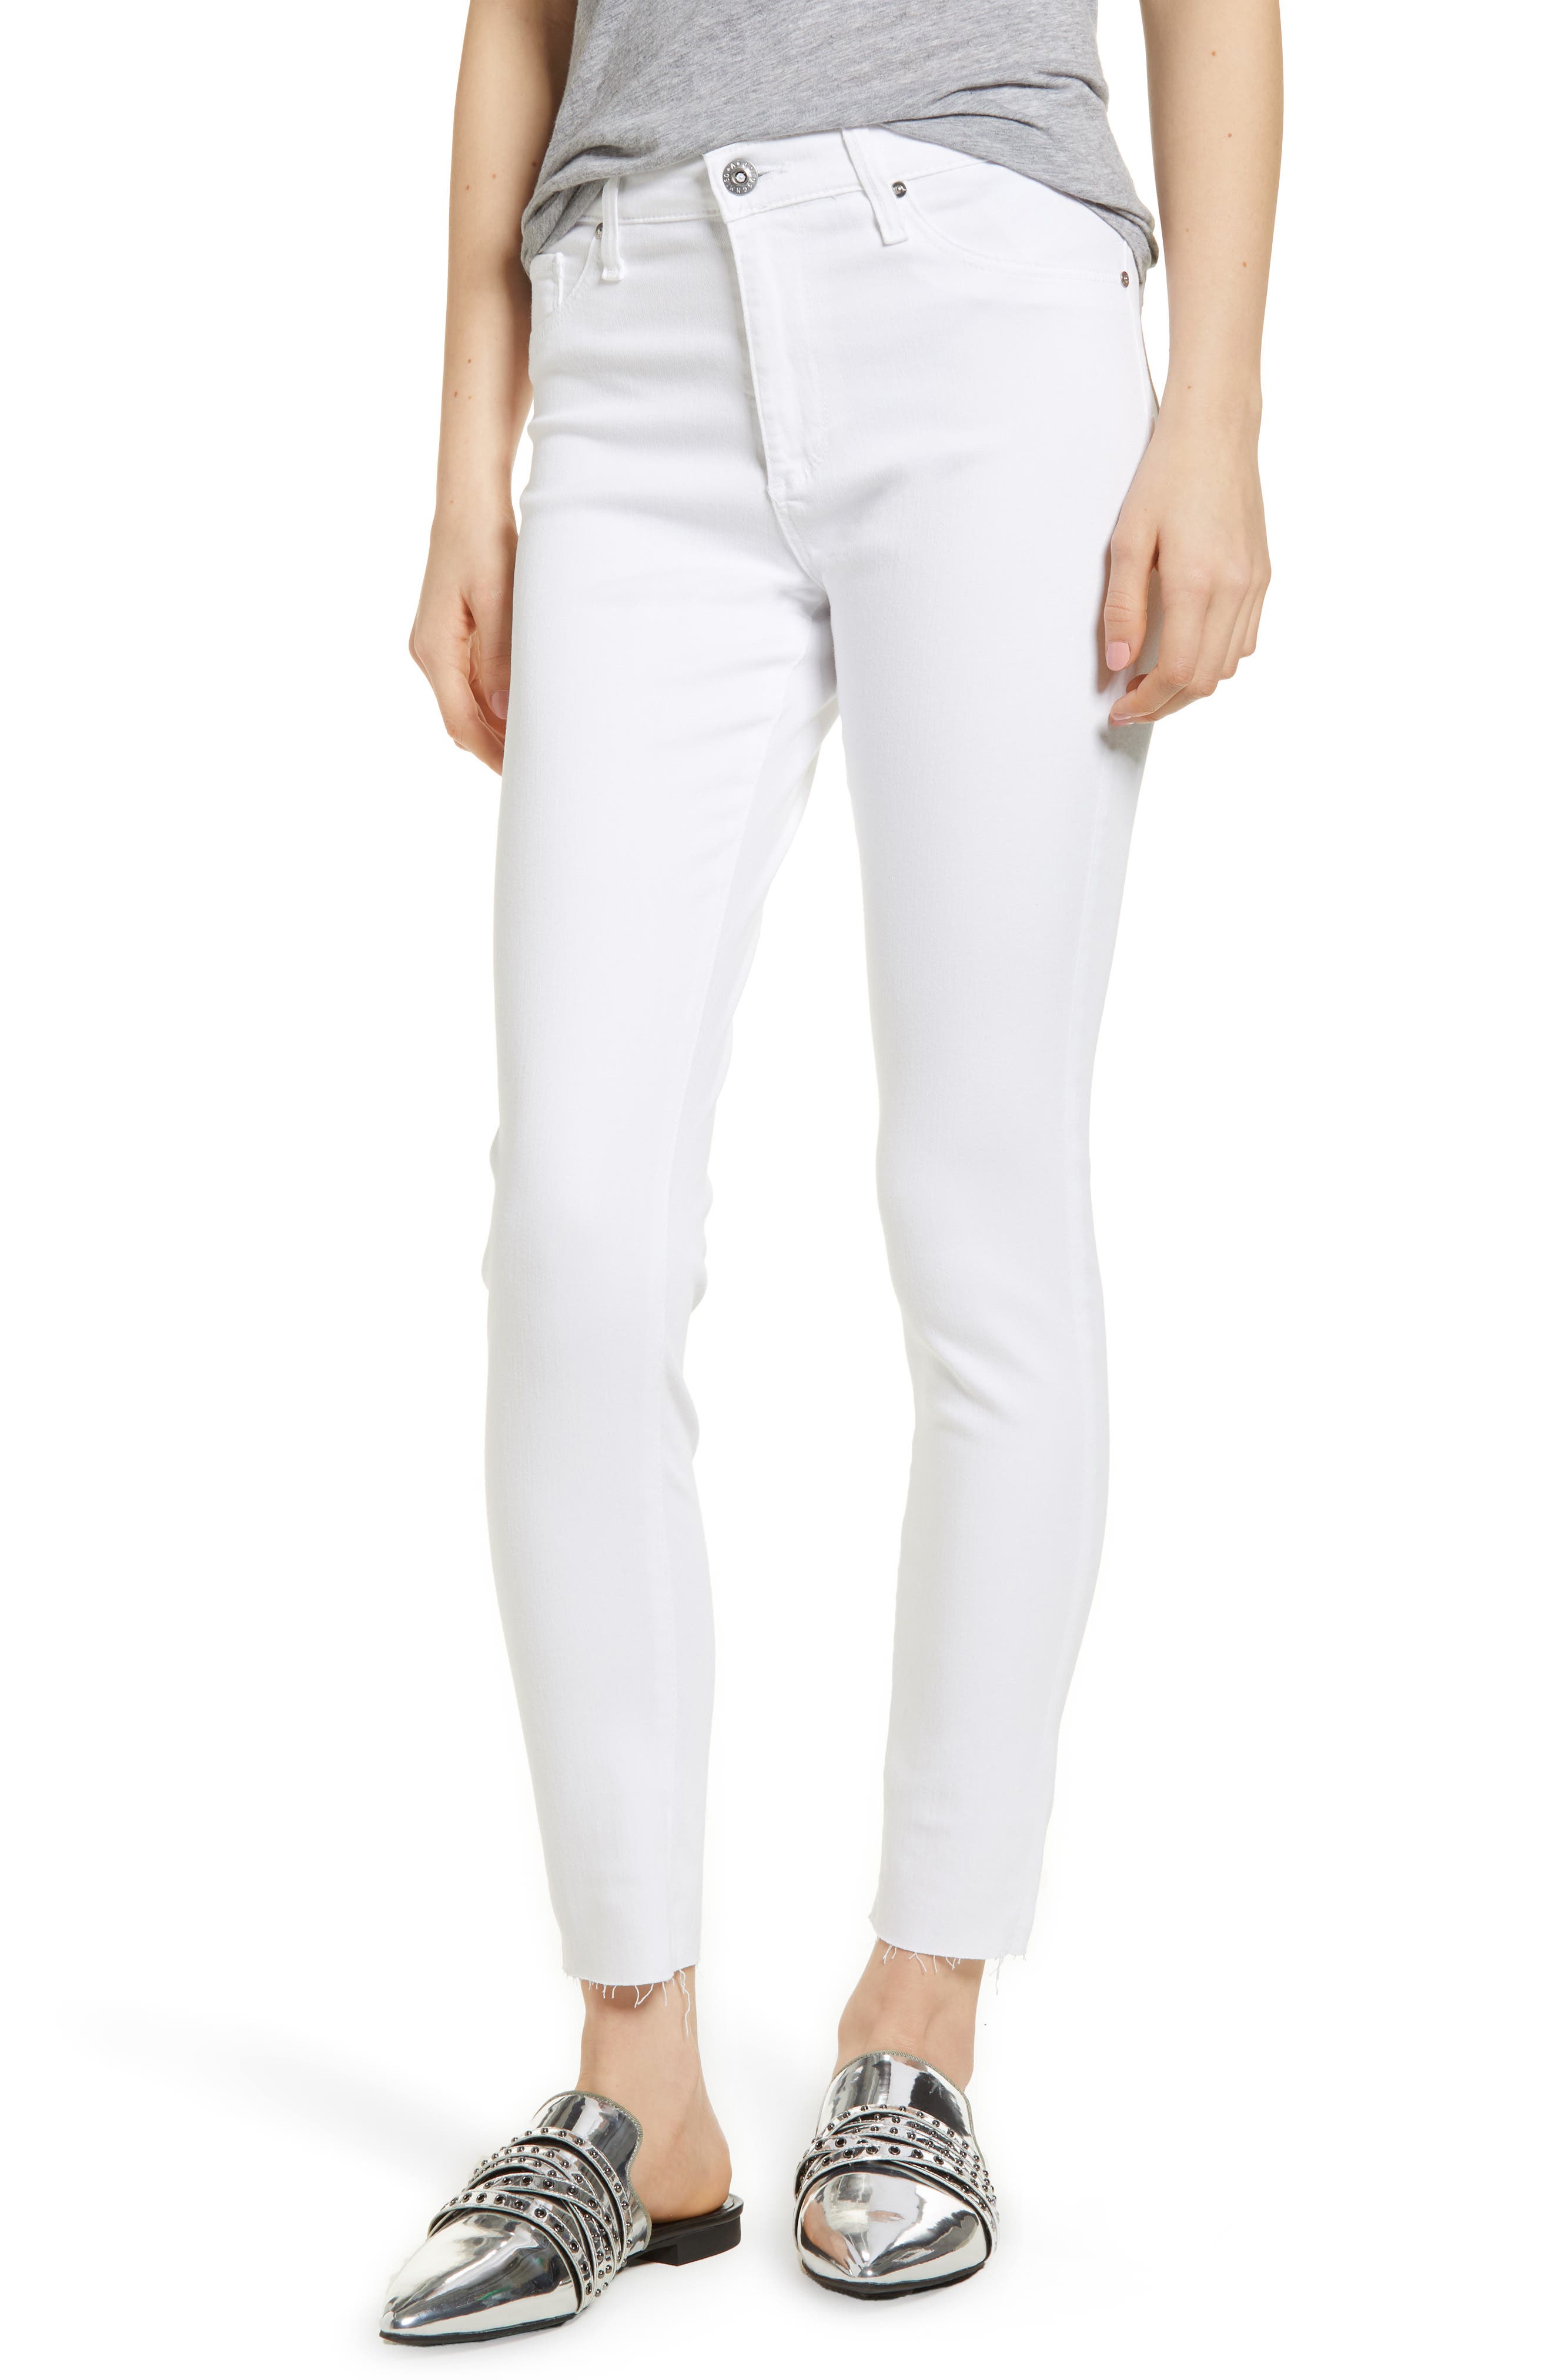 ag farrah high rise skinny jeans white